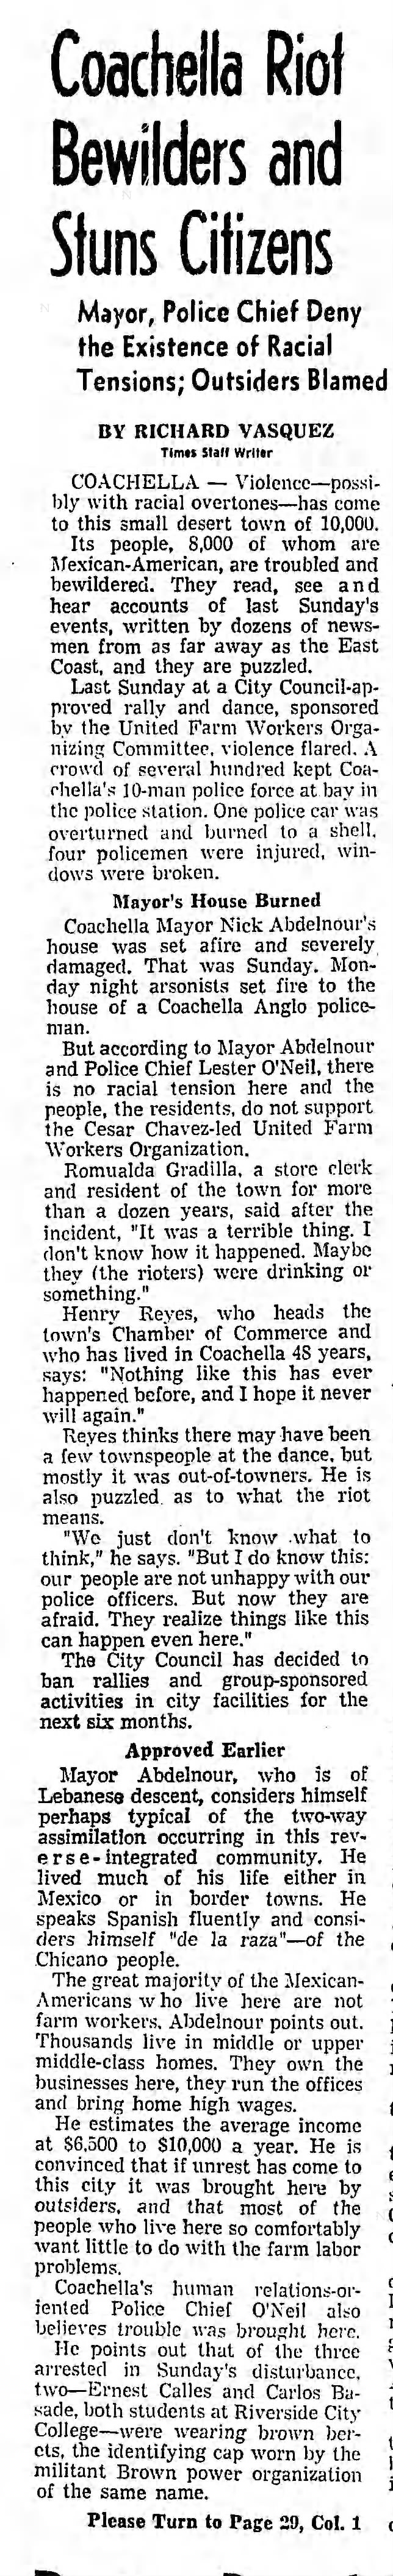 The Coachella Riot of 1970